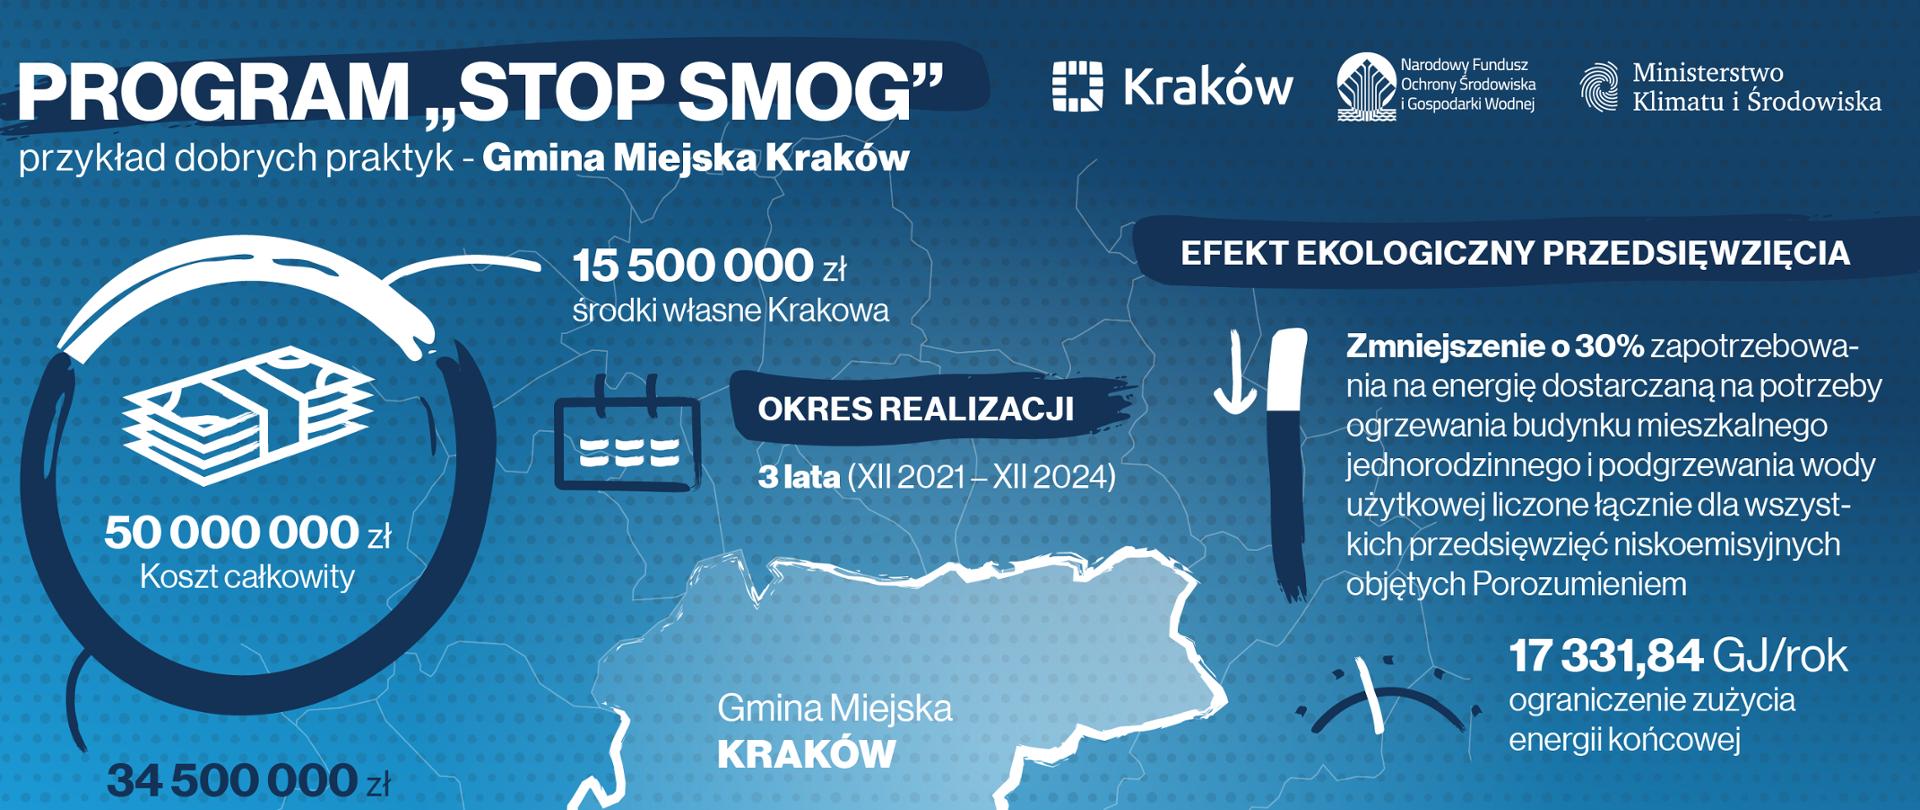 Kraków w Stop Smog